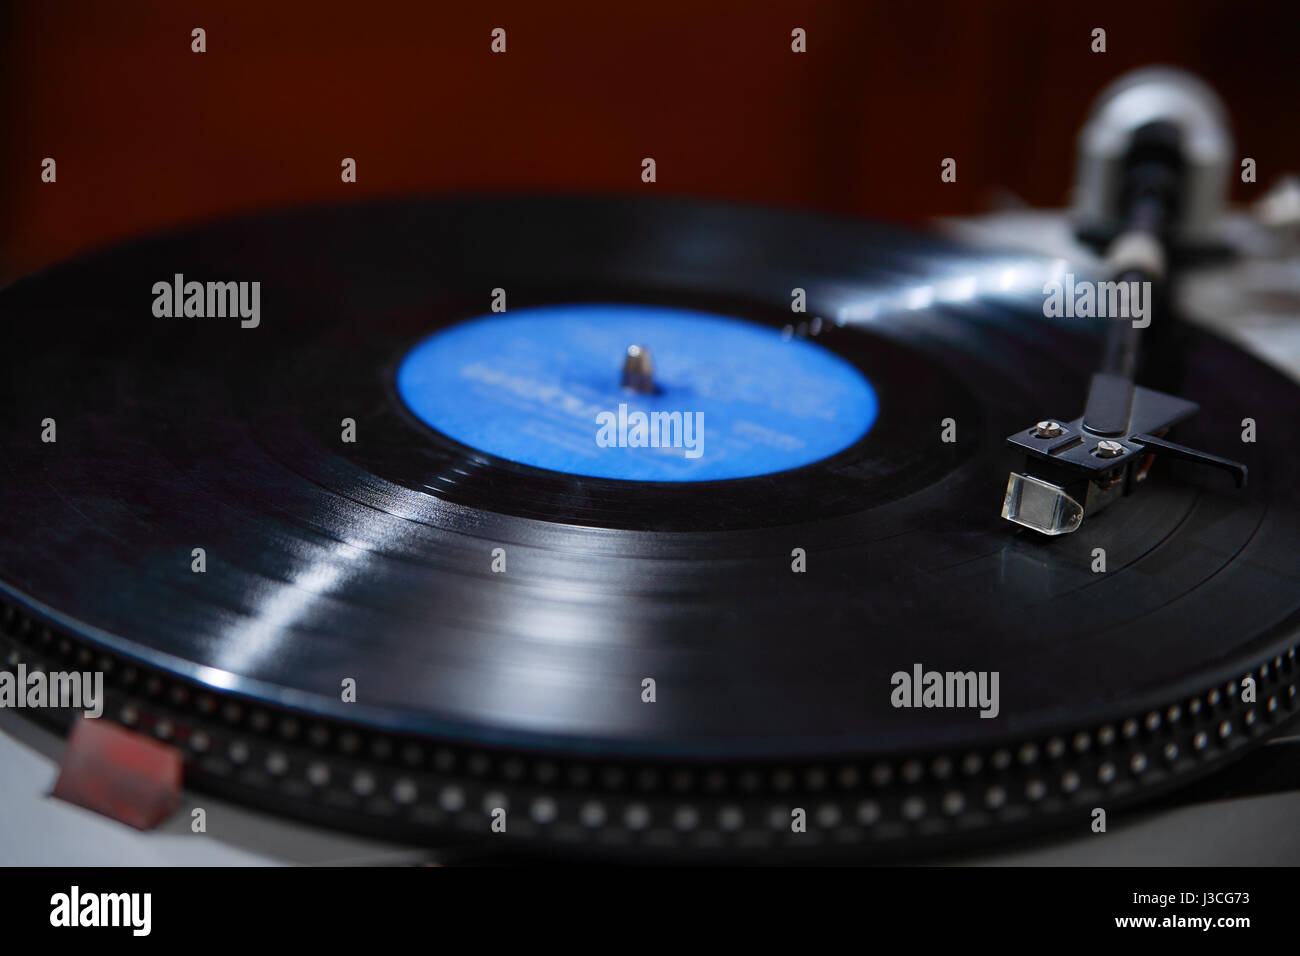 Adele 21 album record player fotografías e imágenes de alta resolución -  Alamy